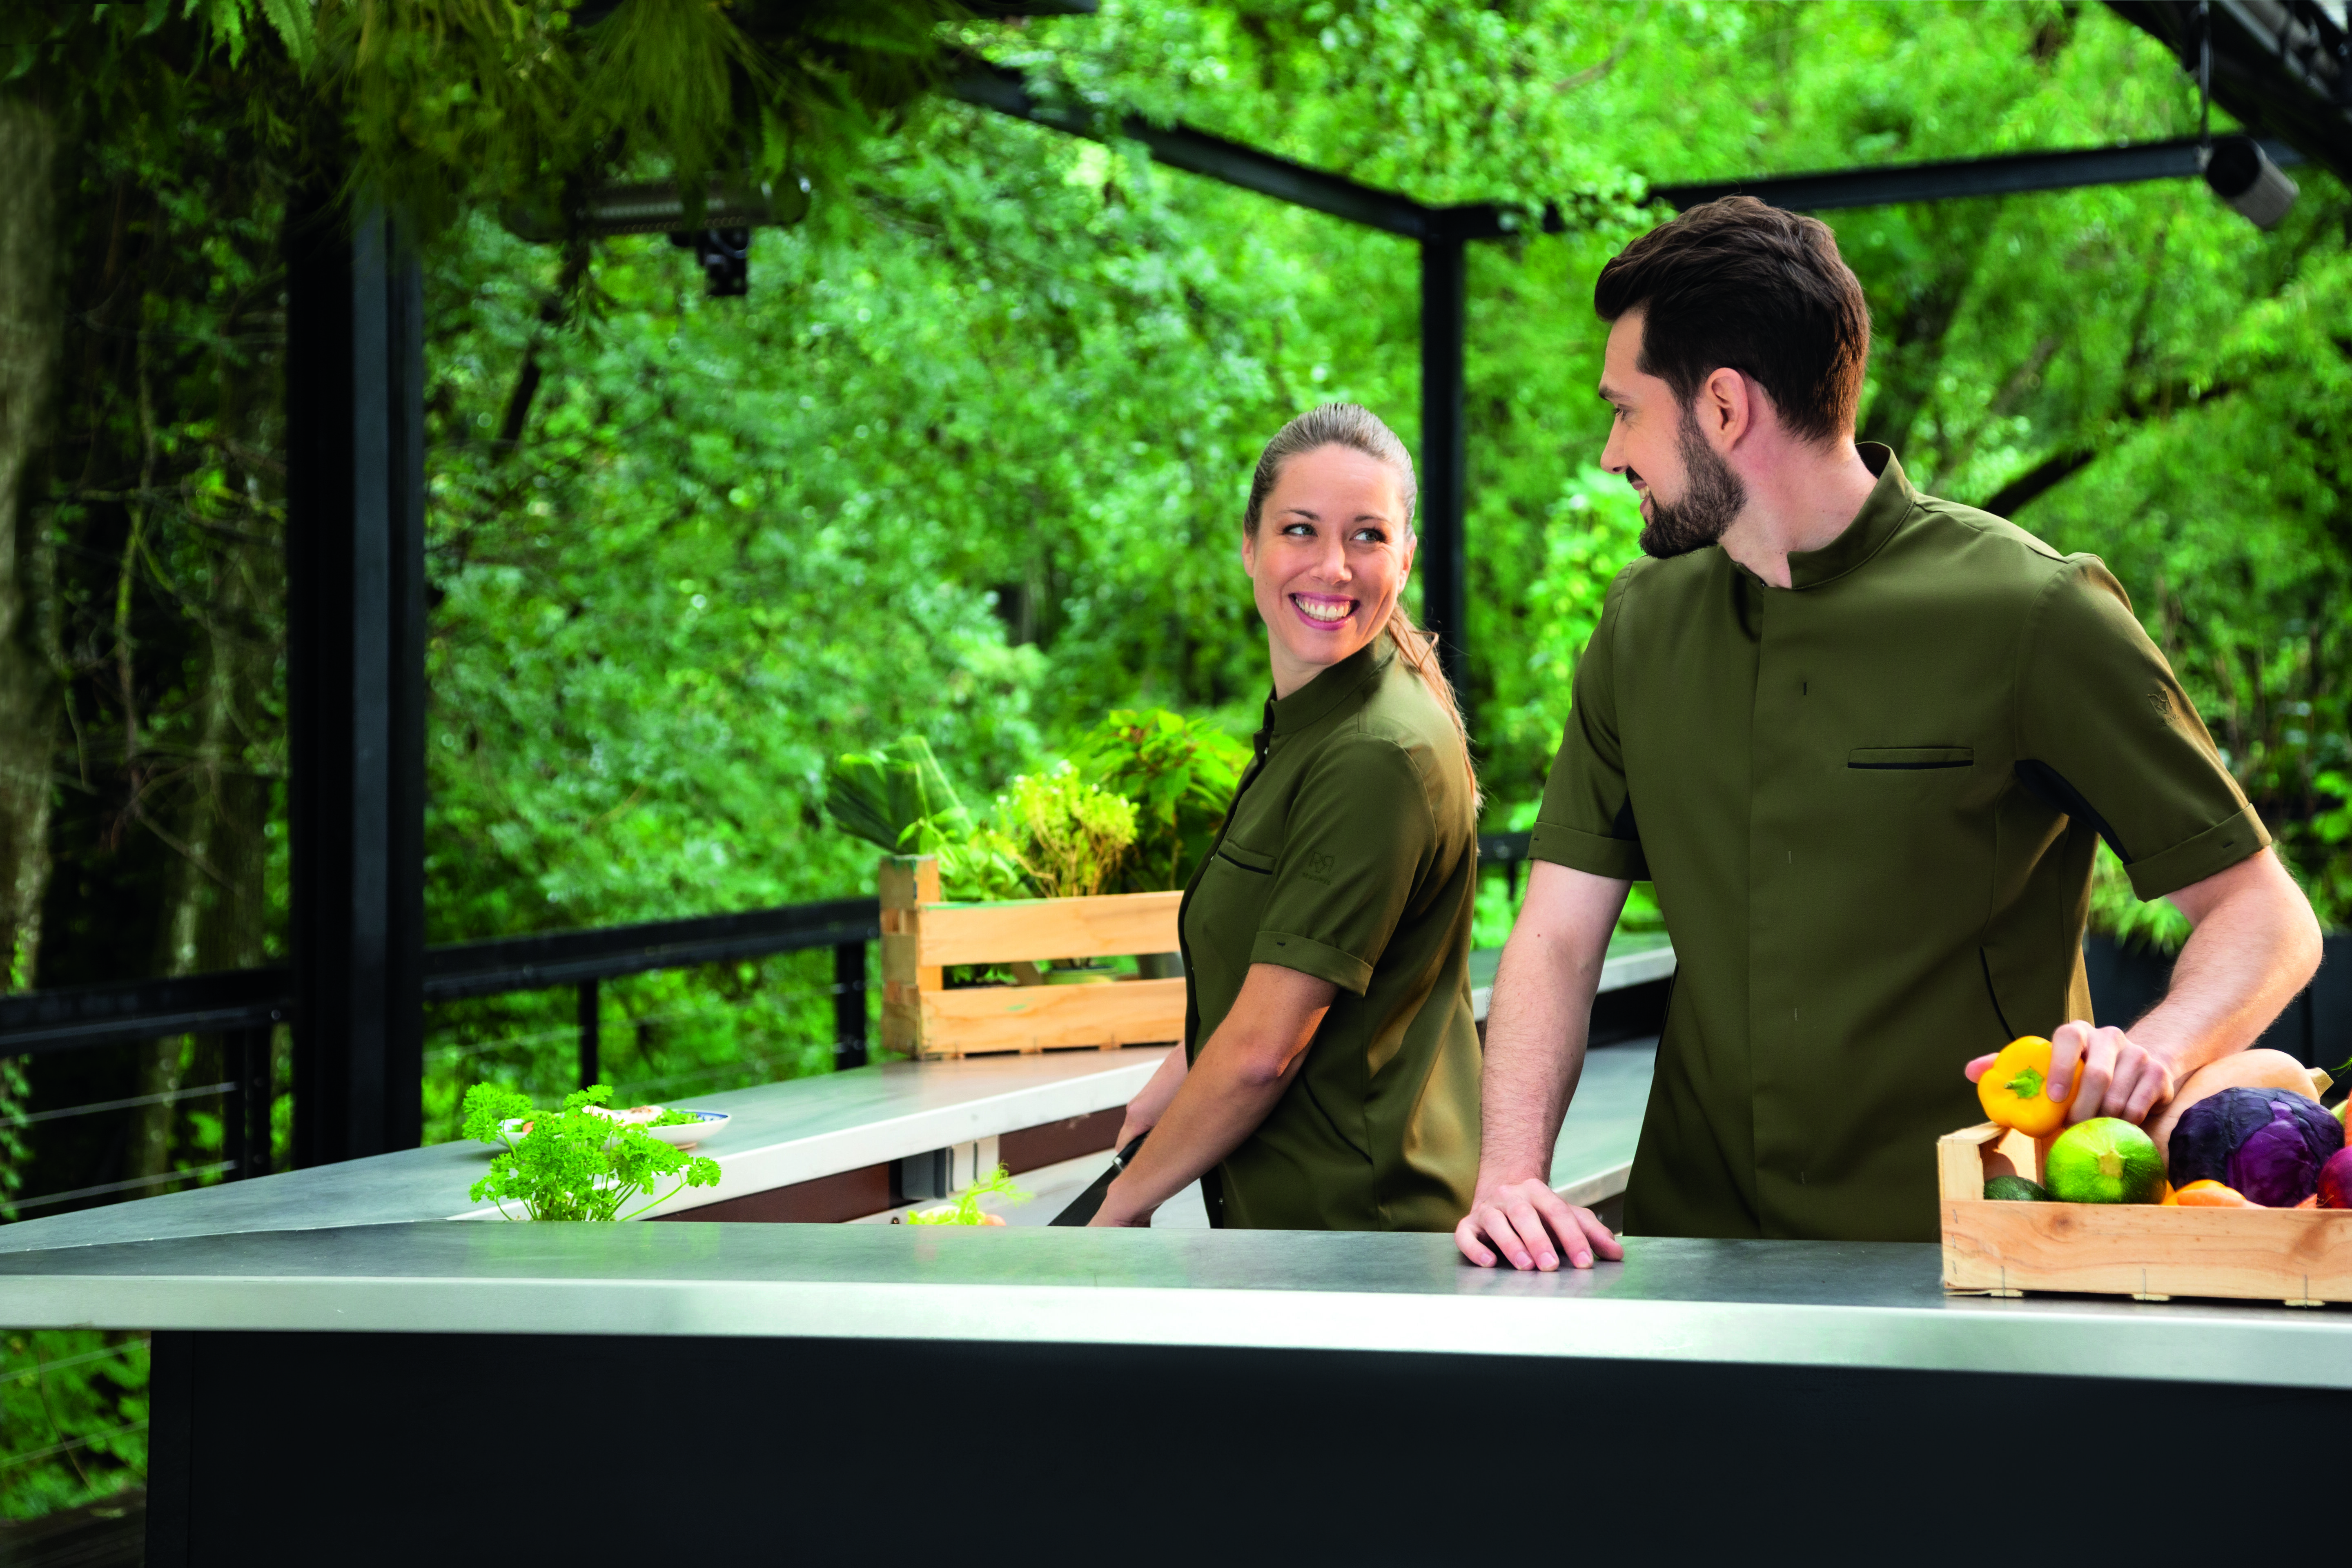 Deux serveurs dans un bar extérieurs, un homme et une femme. Ils portent chacun une chemisette vert kaki de la marque Robur.